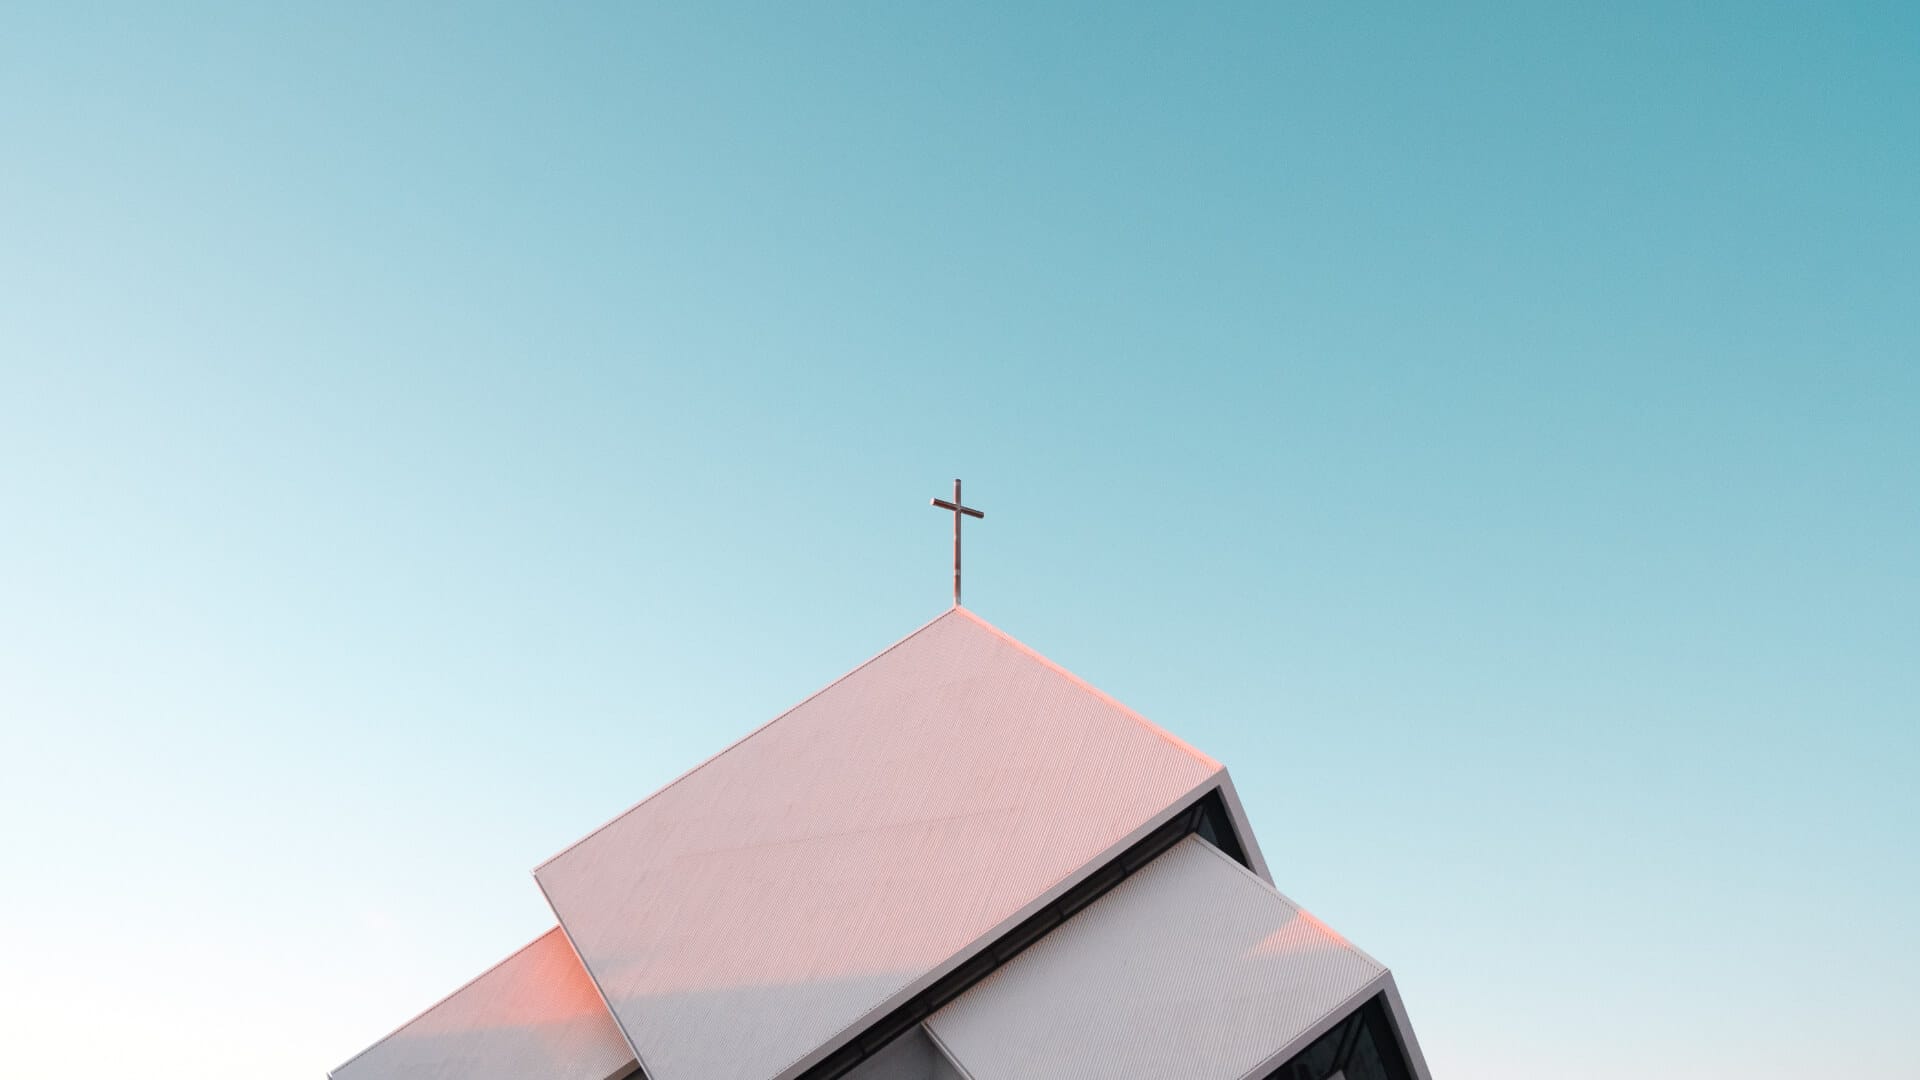 Das Kreuz auf der Dachspitze einer Kirche ragt in den blauen Himmel. Symbolisch für karitative Dienste und diakonisch-kirchliche Einrichtungen.